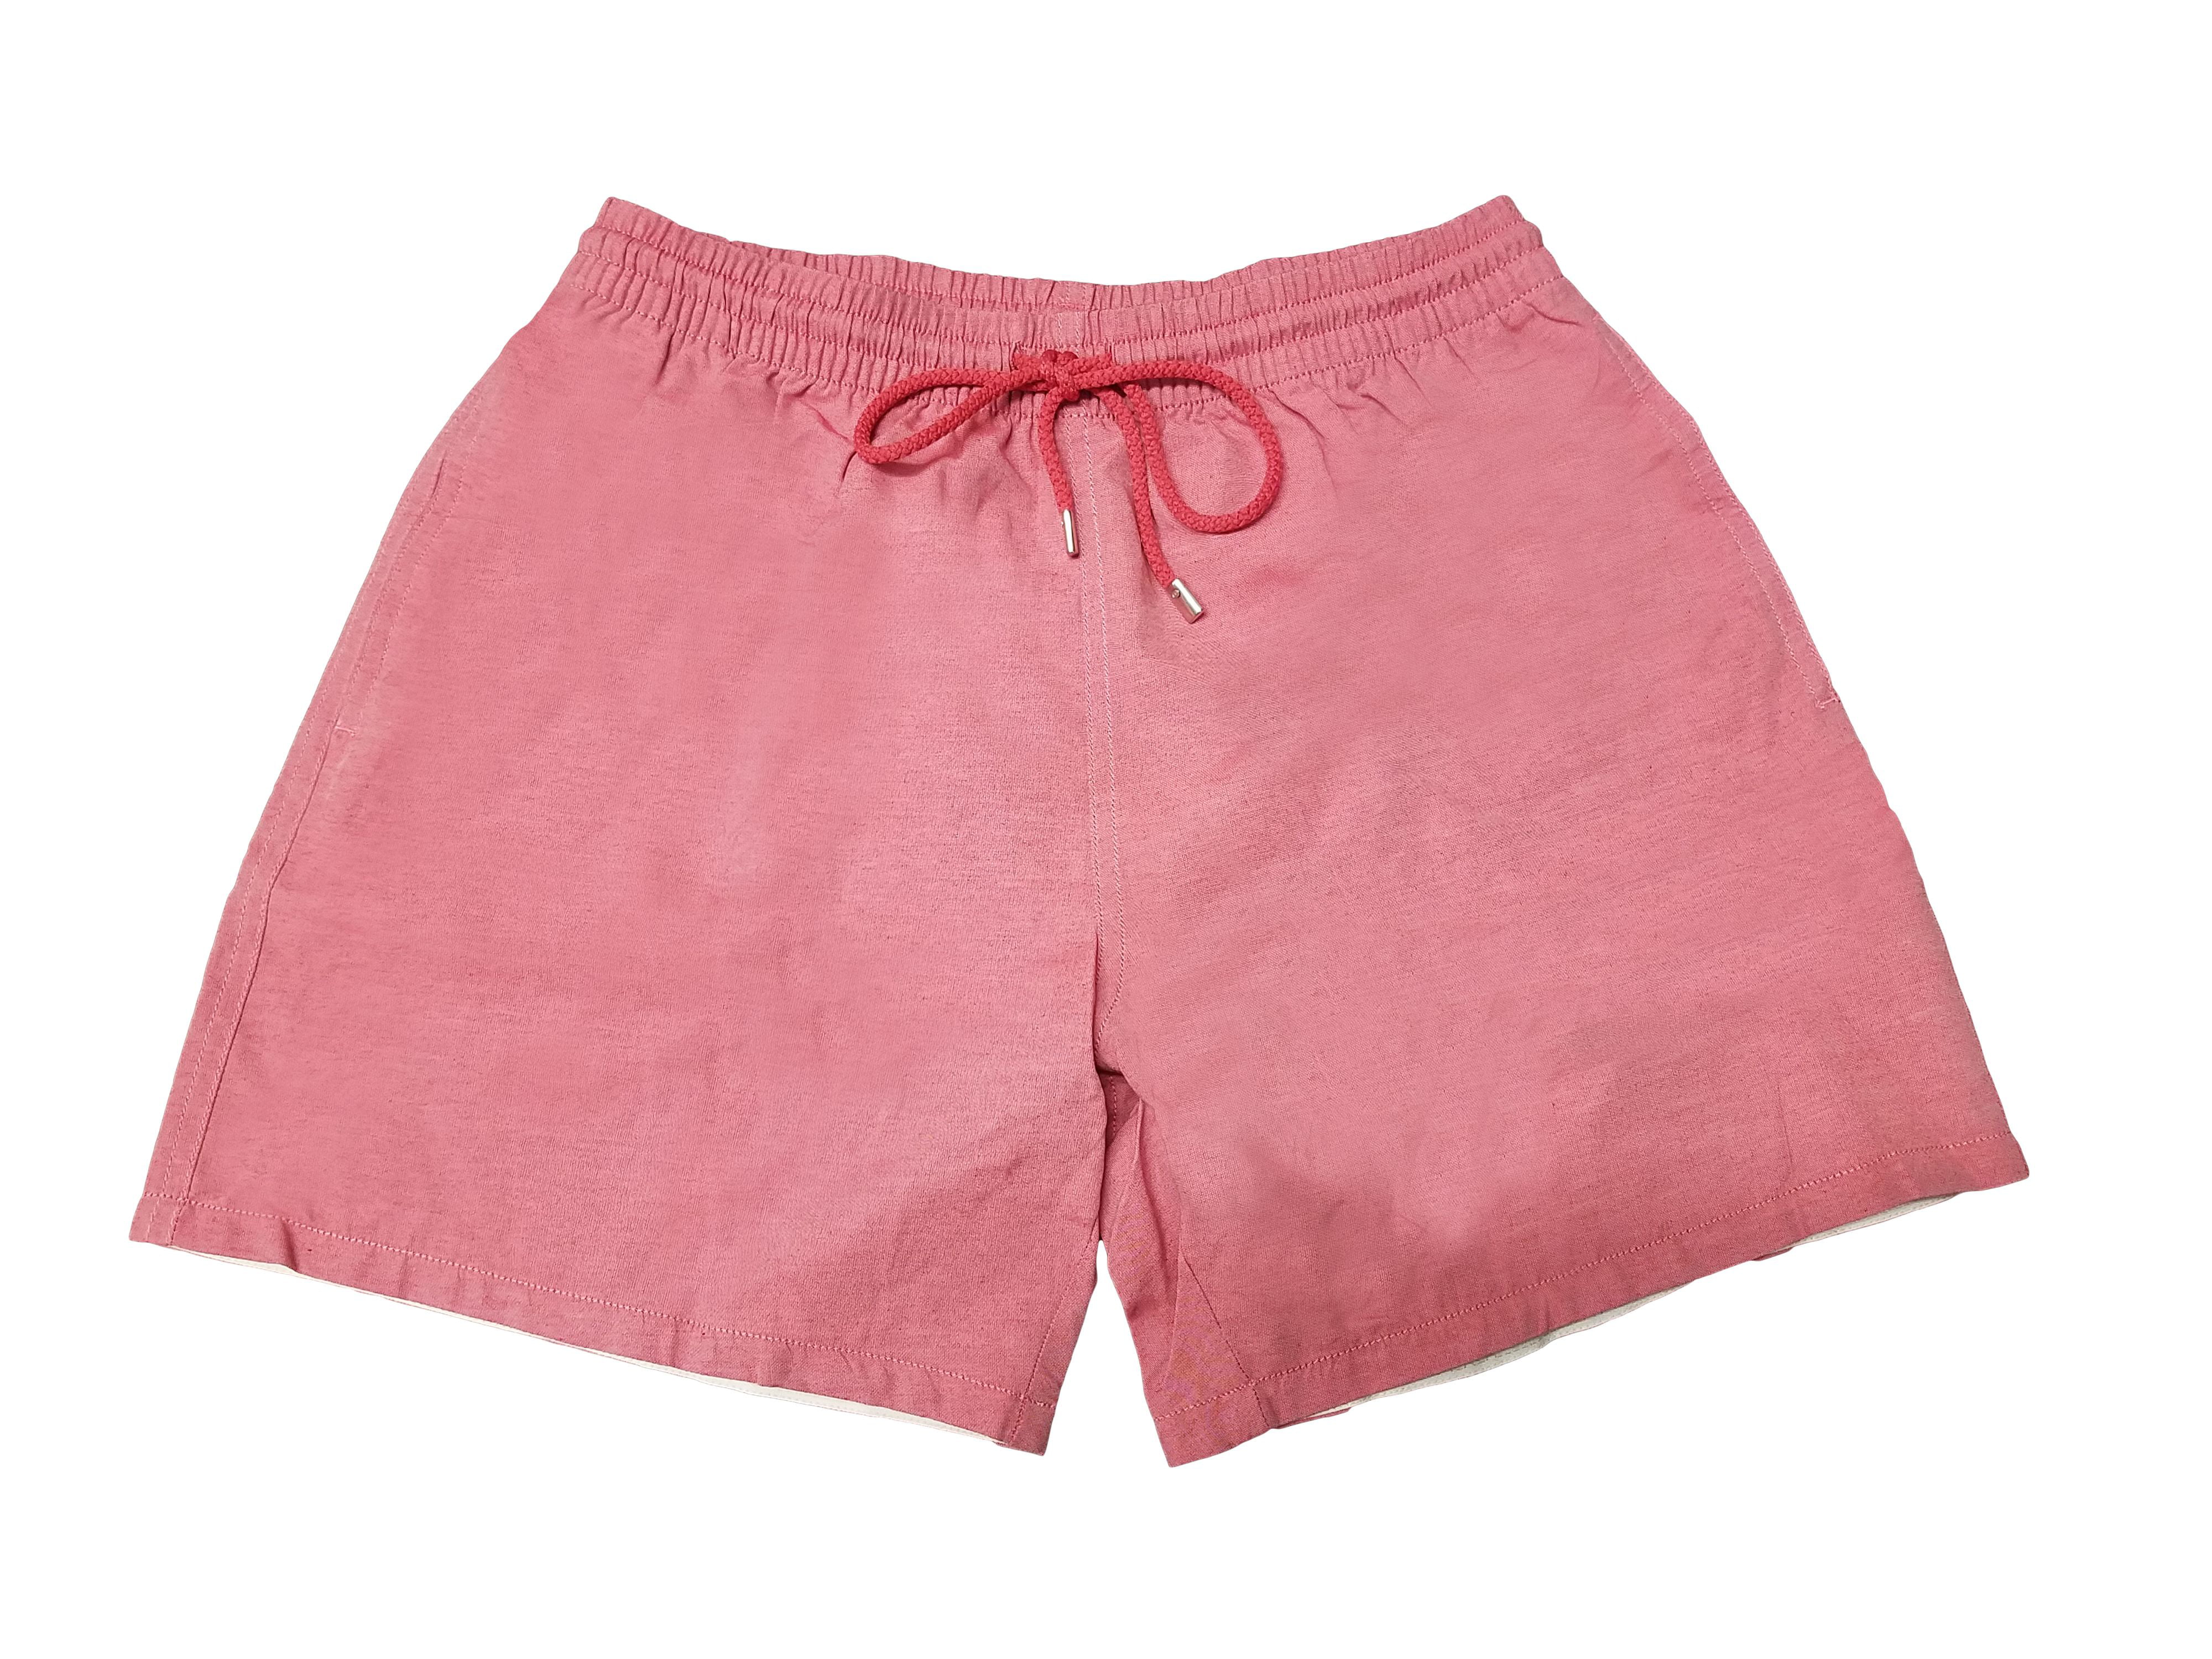 La Perla Men's Solid Pink Swim Shorts (2XL) - Walmart.com